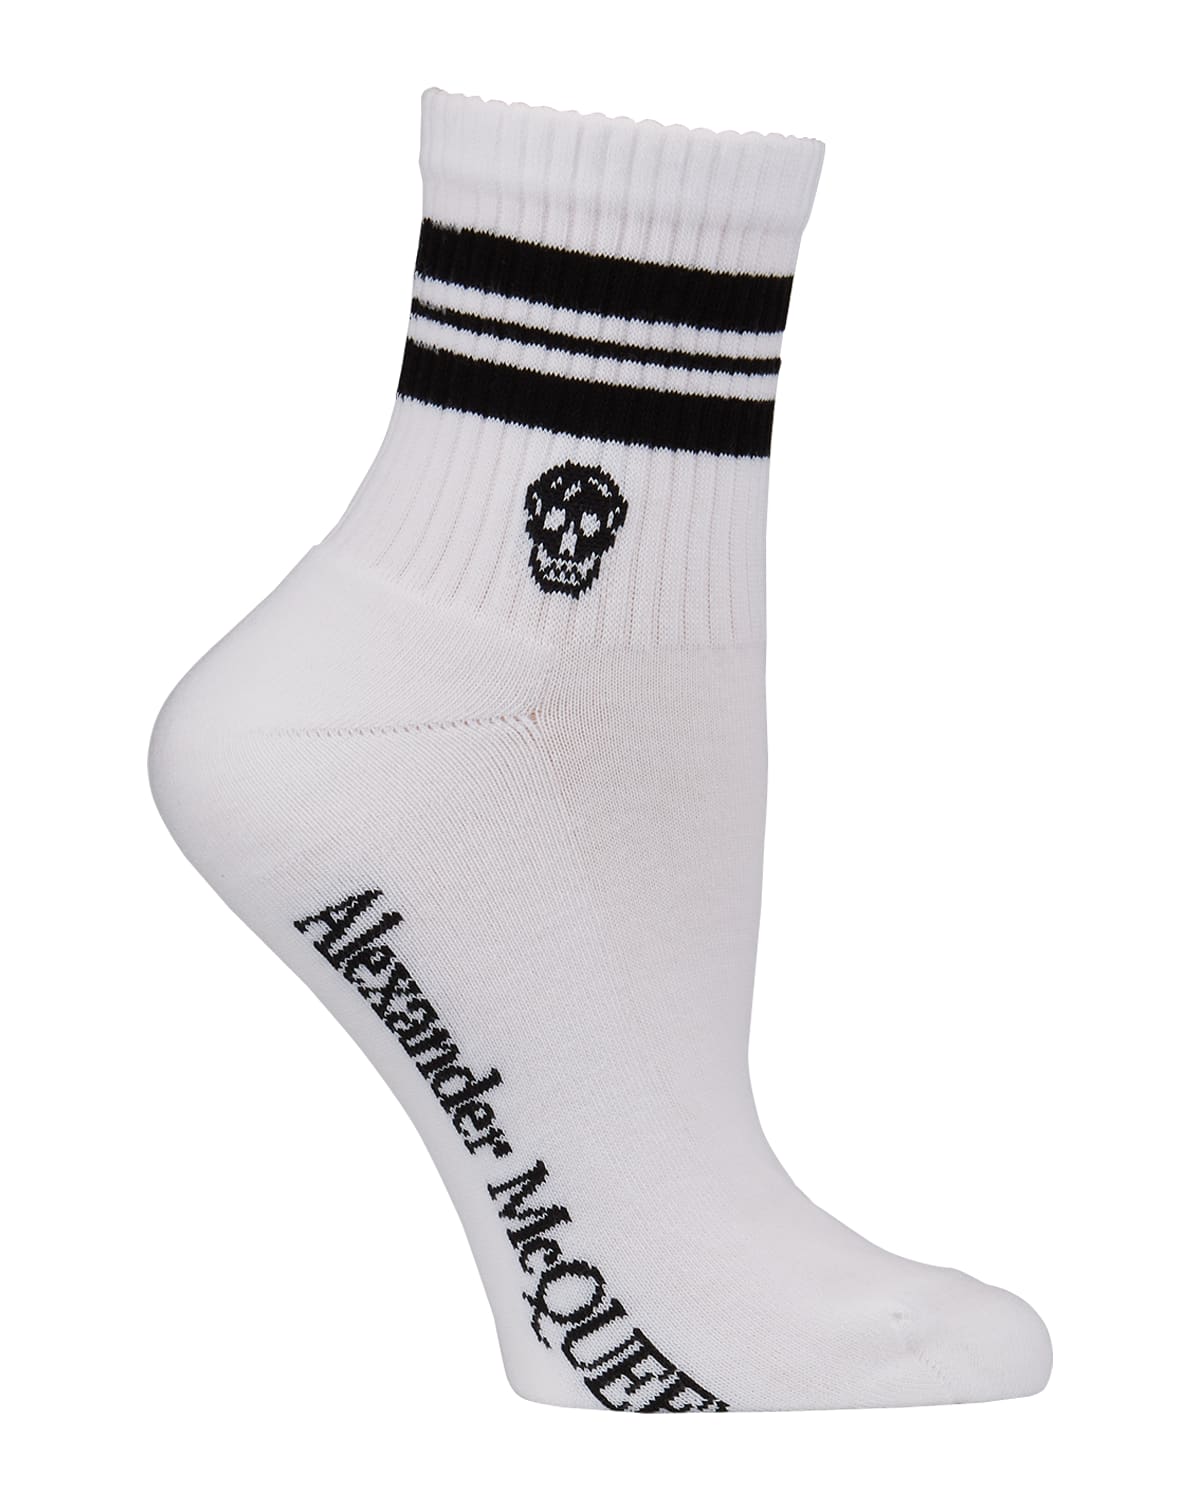 Stripe & Skull Sport Socks